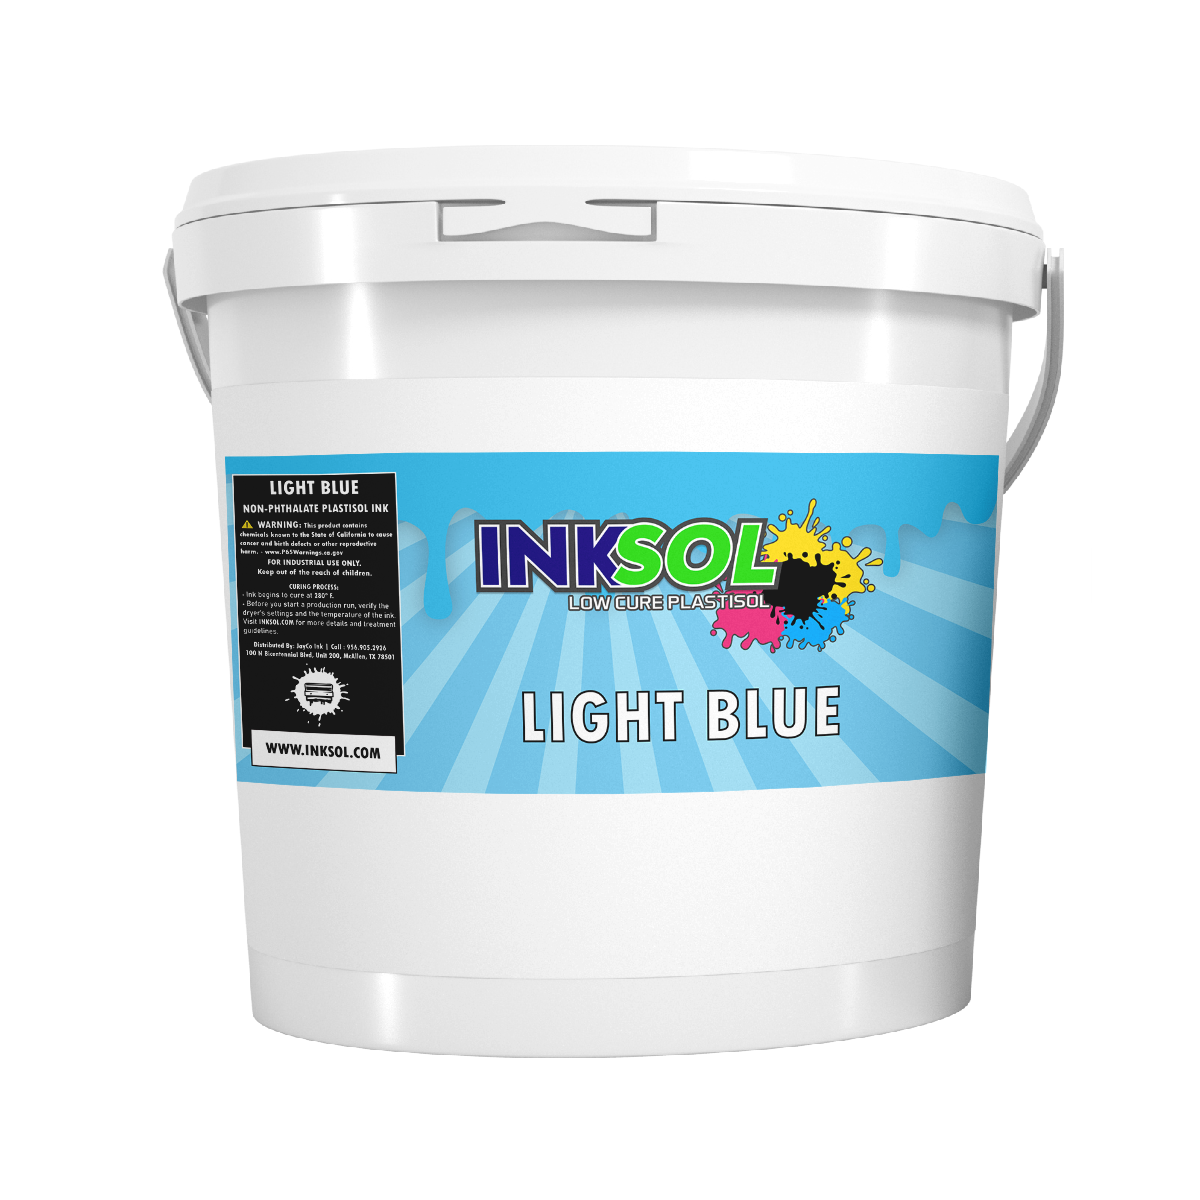 InkSol™ Low Cure Plastisol Light Blue